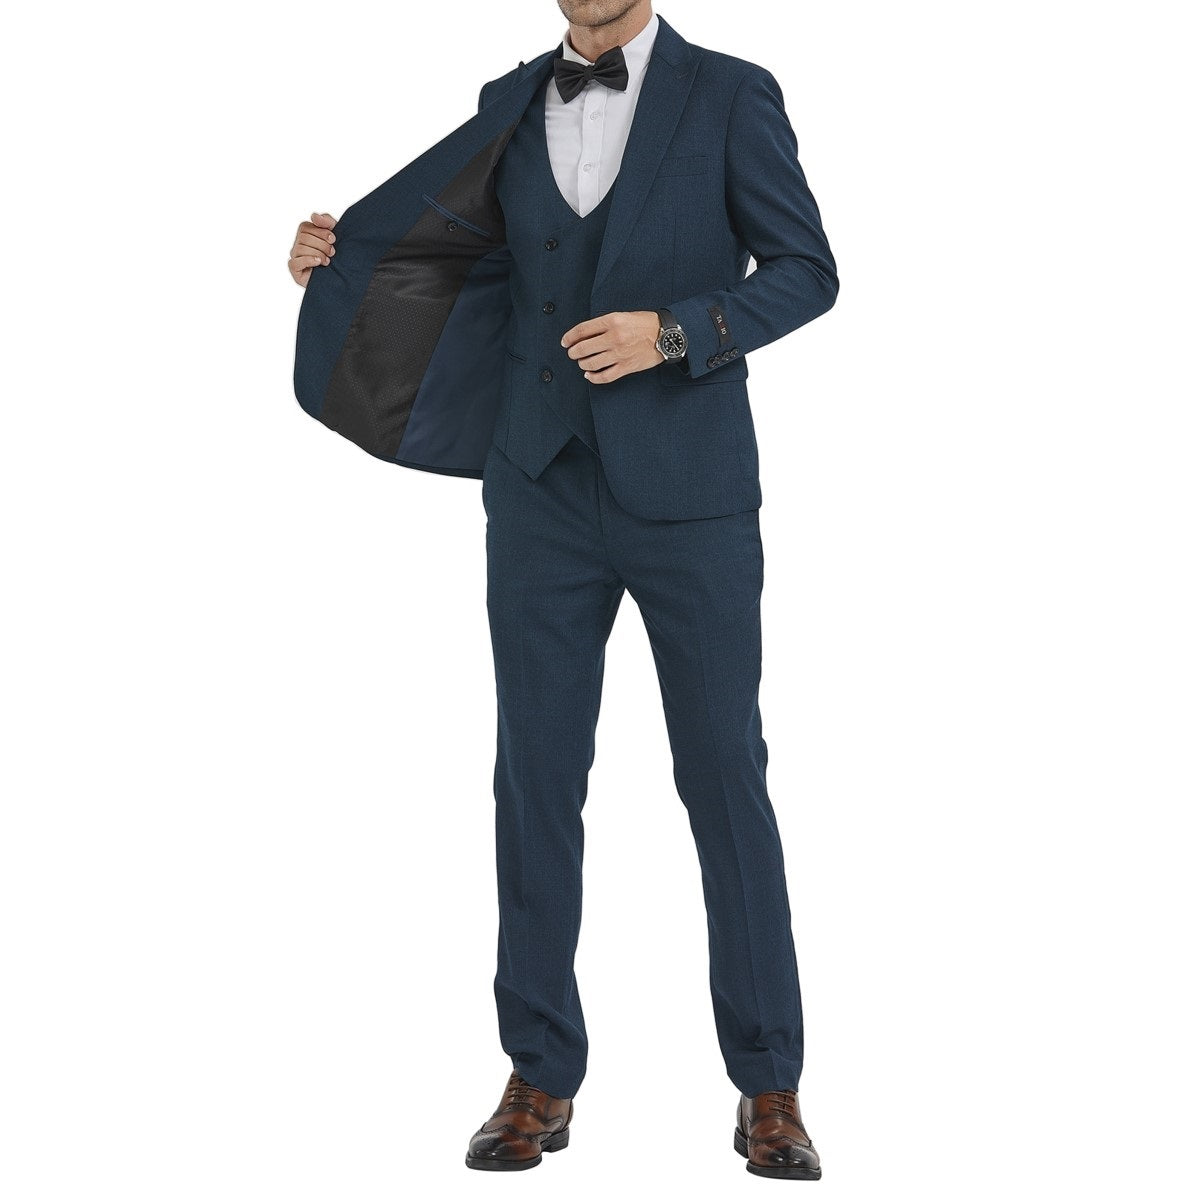 Traje Formal para Hombre TA-M349SK-04 - Formal Suit for Men